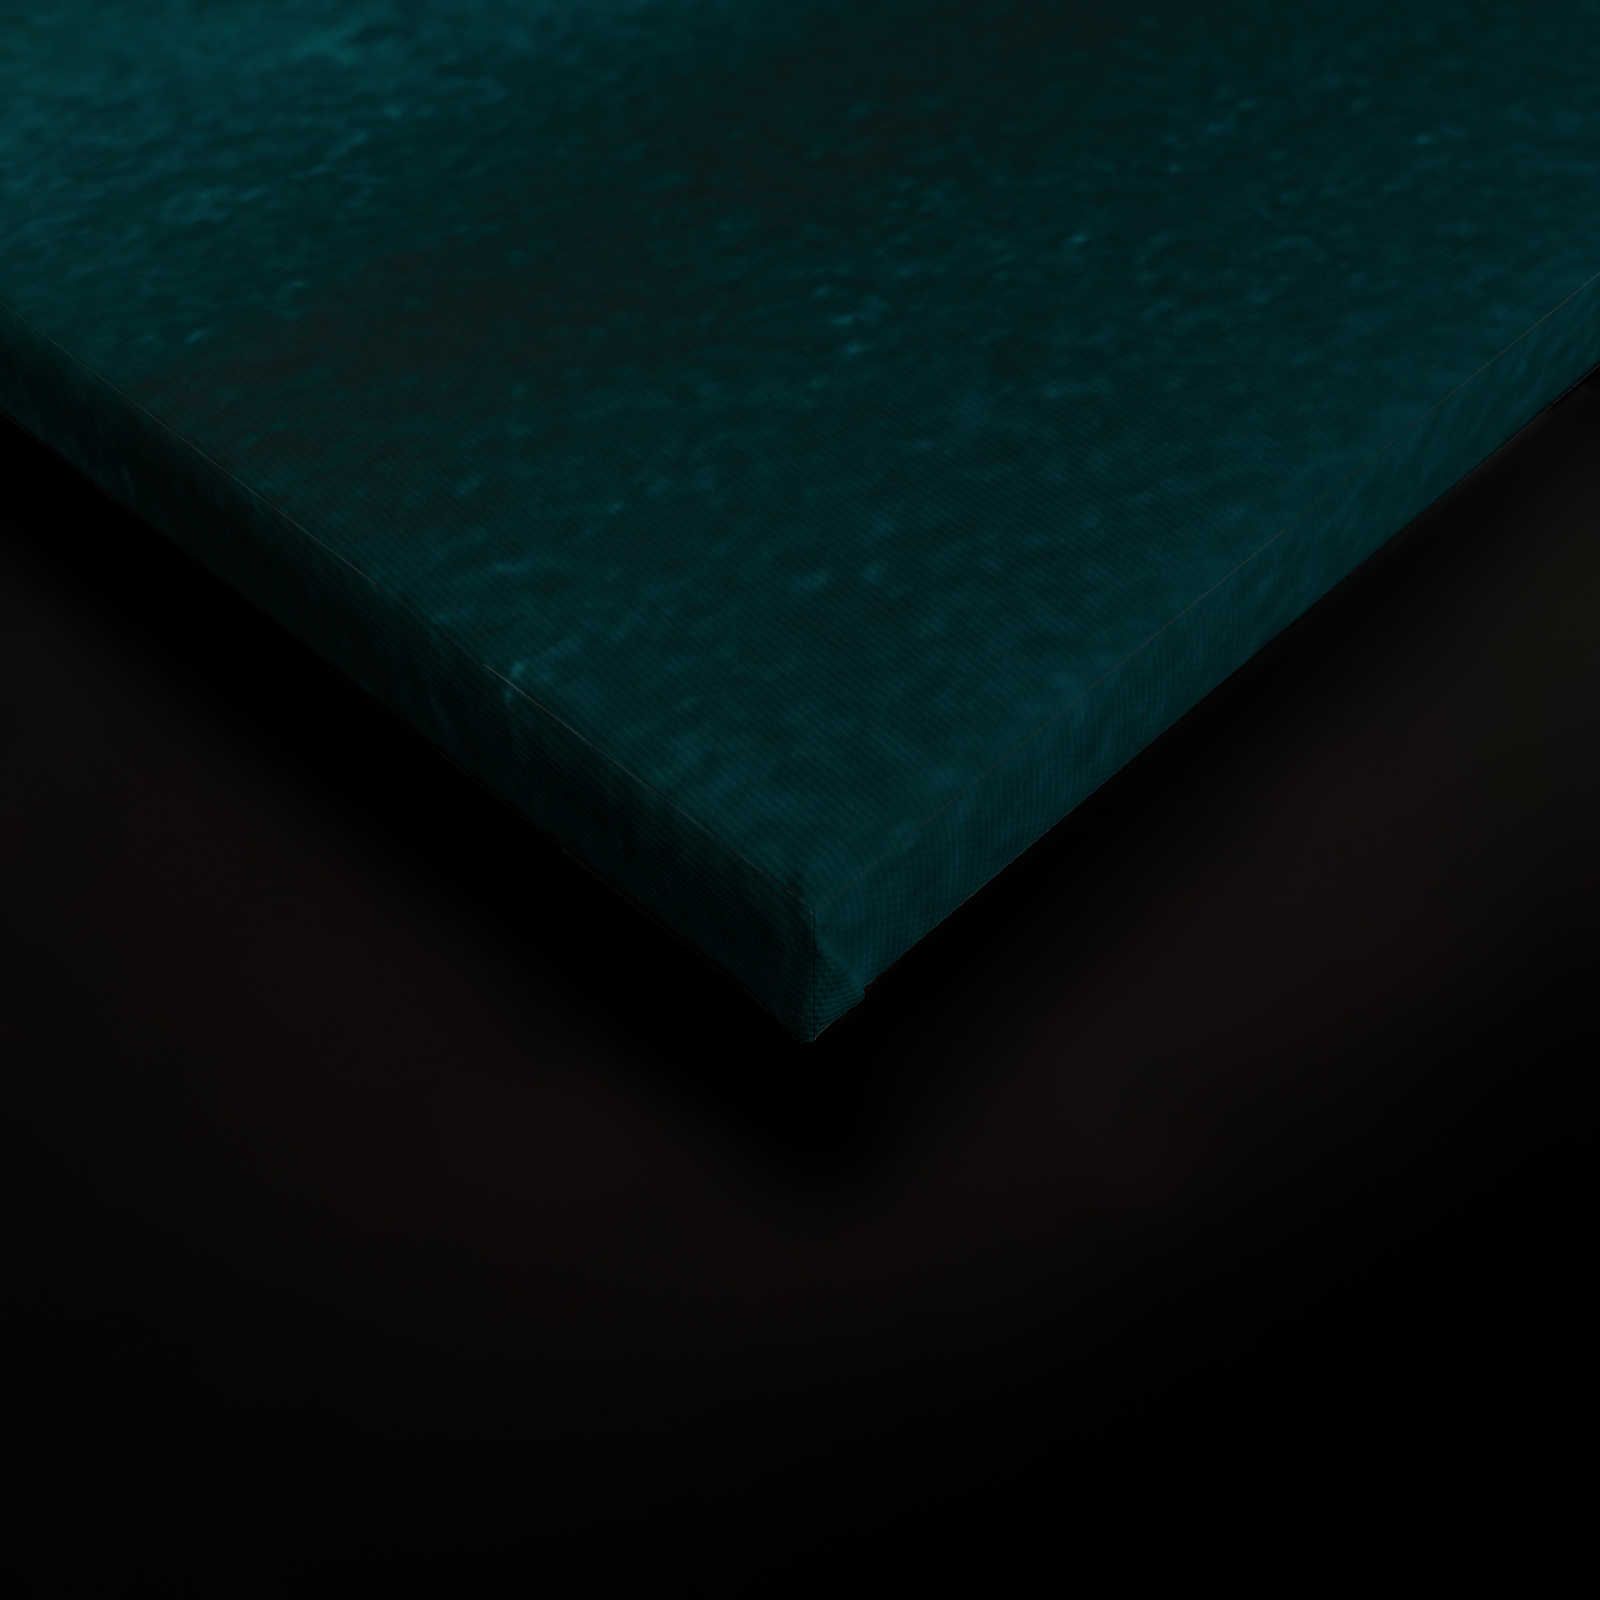             Gezeiten Leinwandbild mit abstraktem Wasser Aquarell – 0,90 m x 0,60 m
        